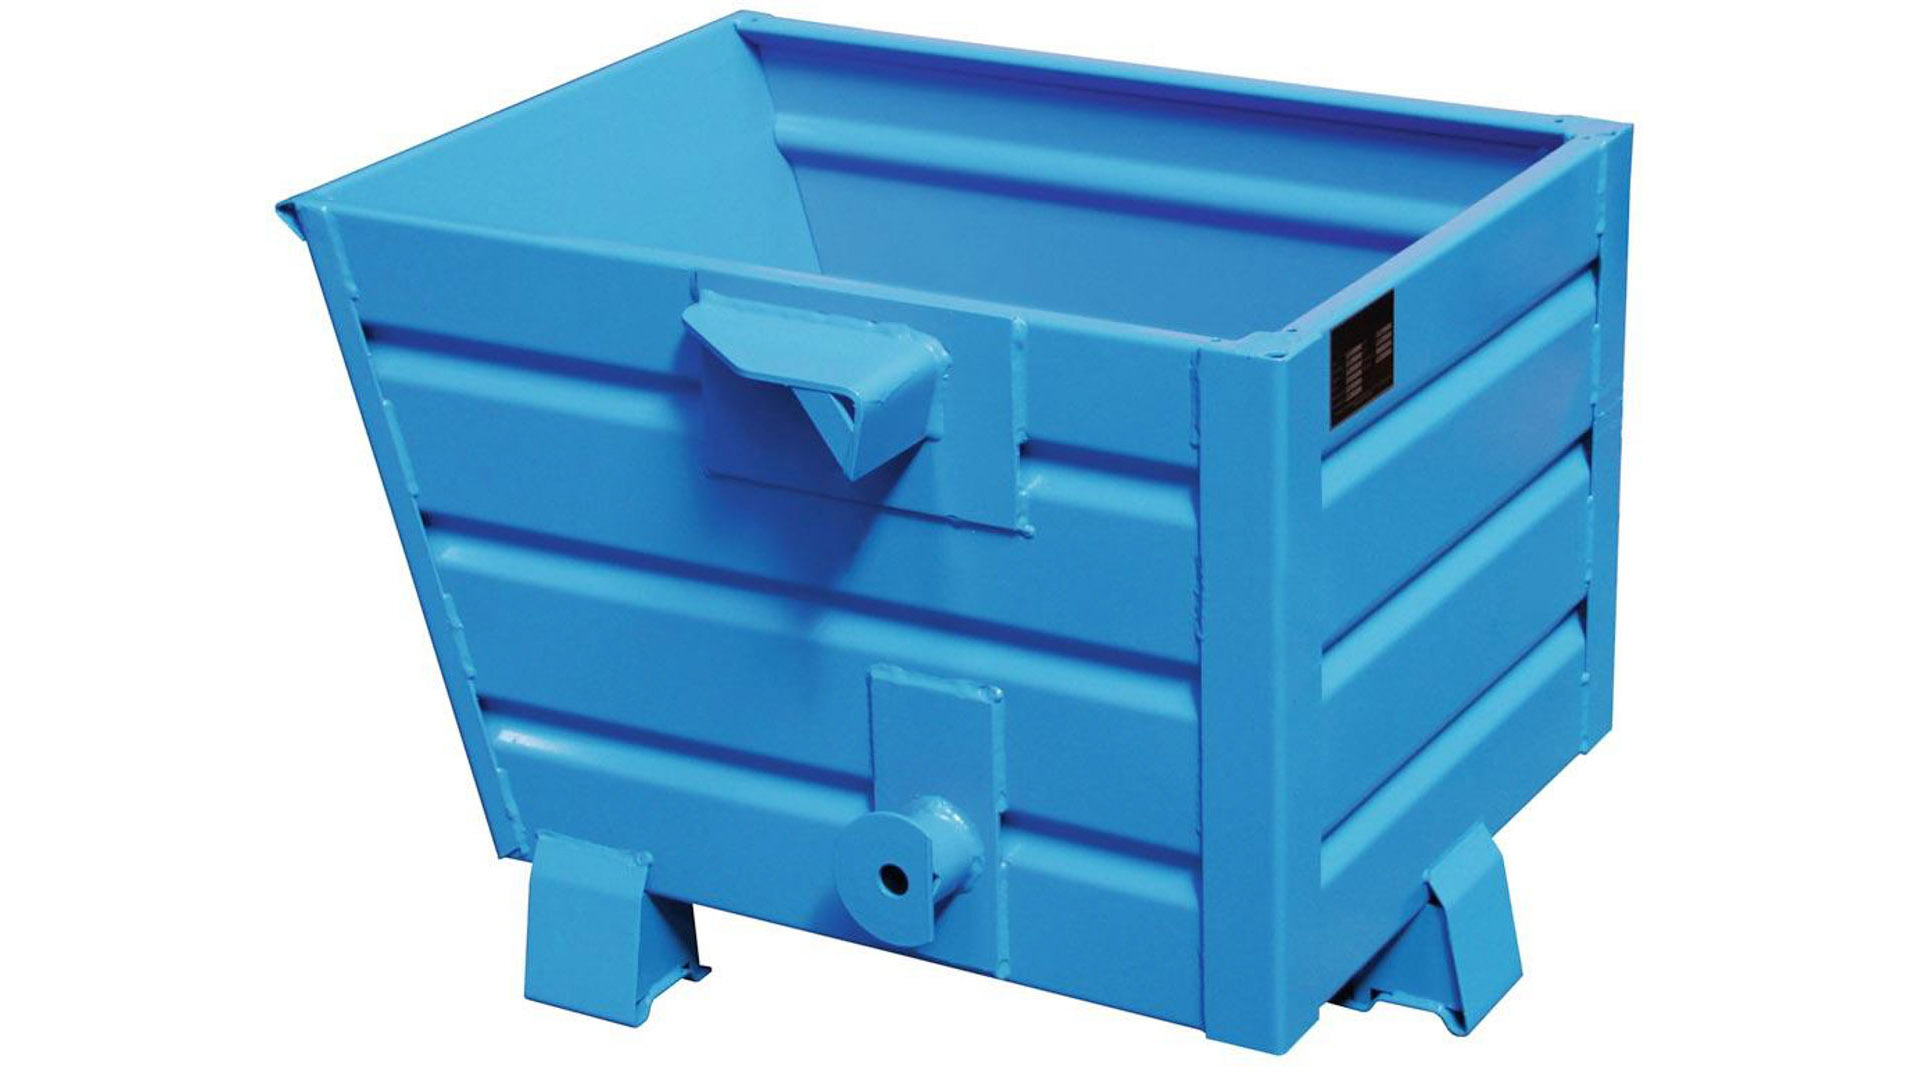 Stapelkipper 300 l - 500 kg - 800x600x600 mm - 3-Fach stapelbar - blau